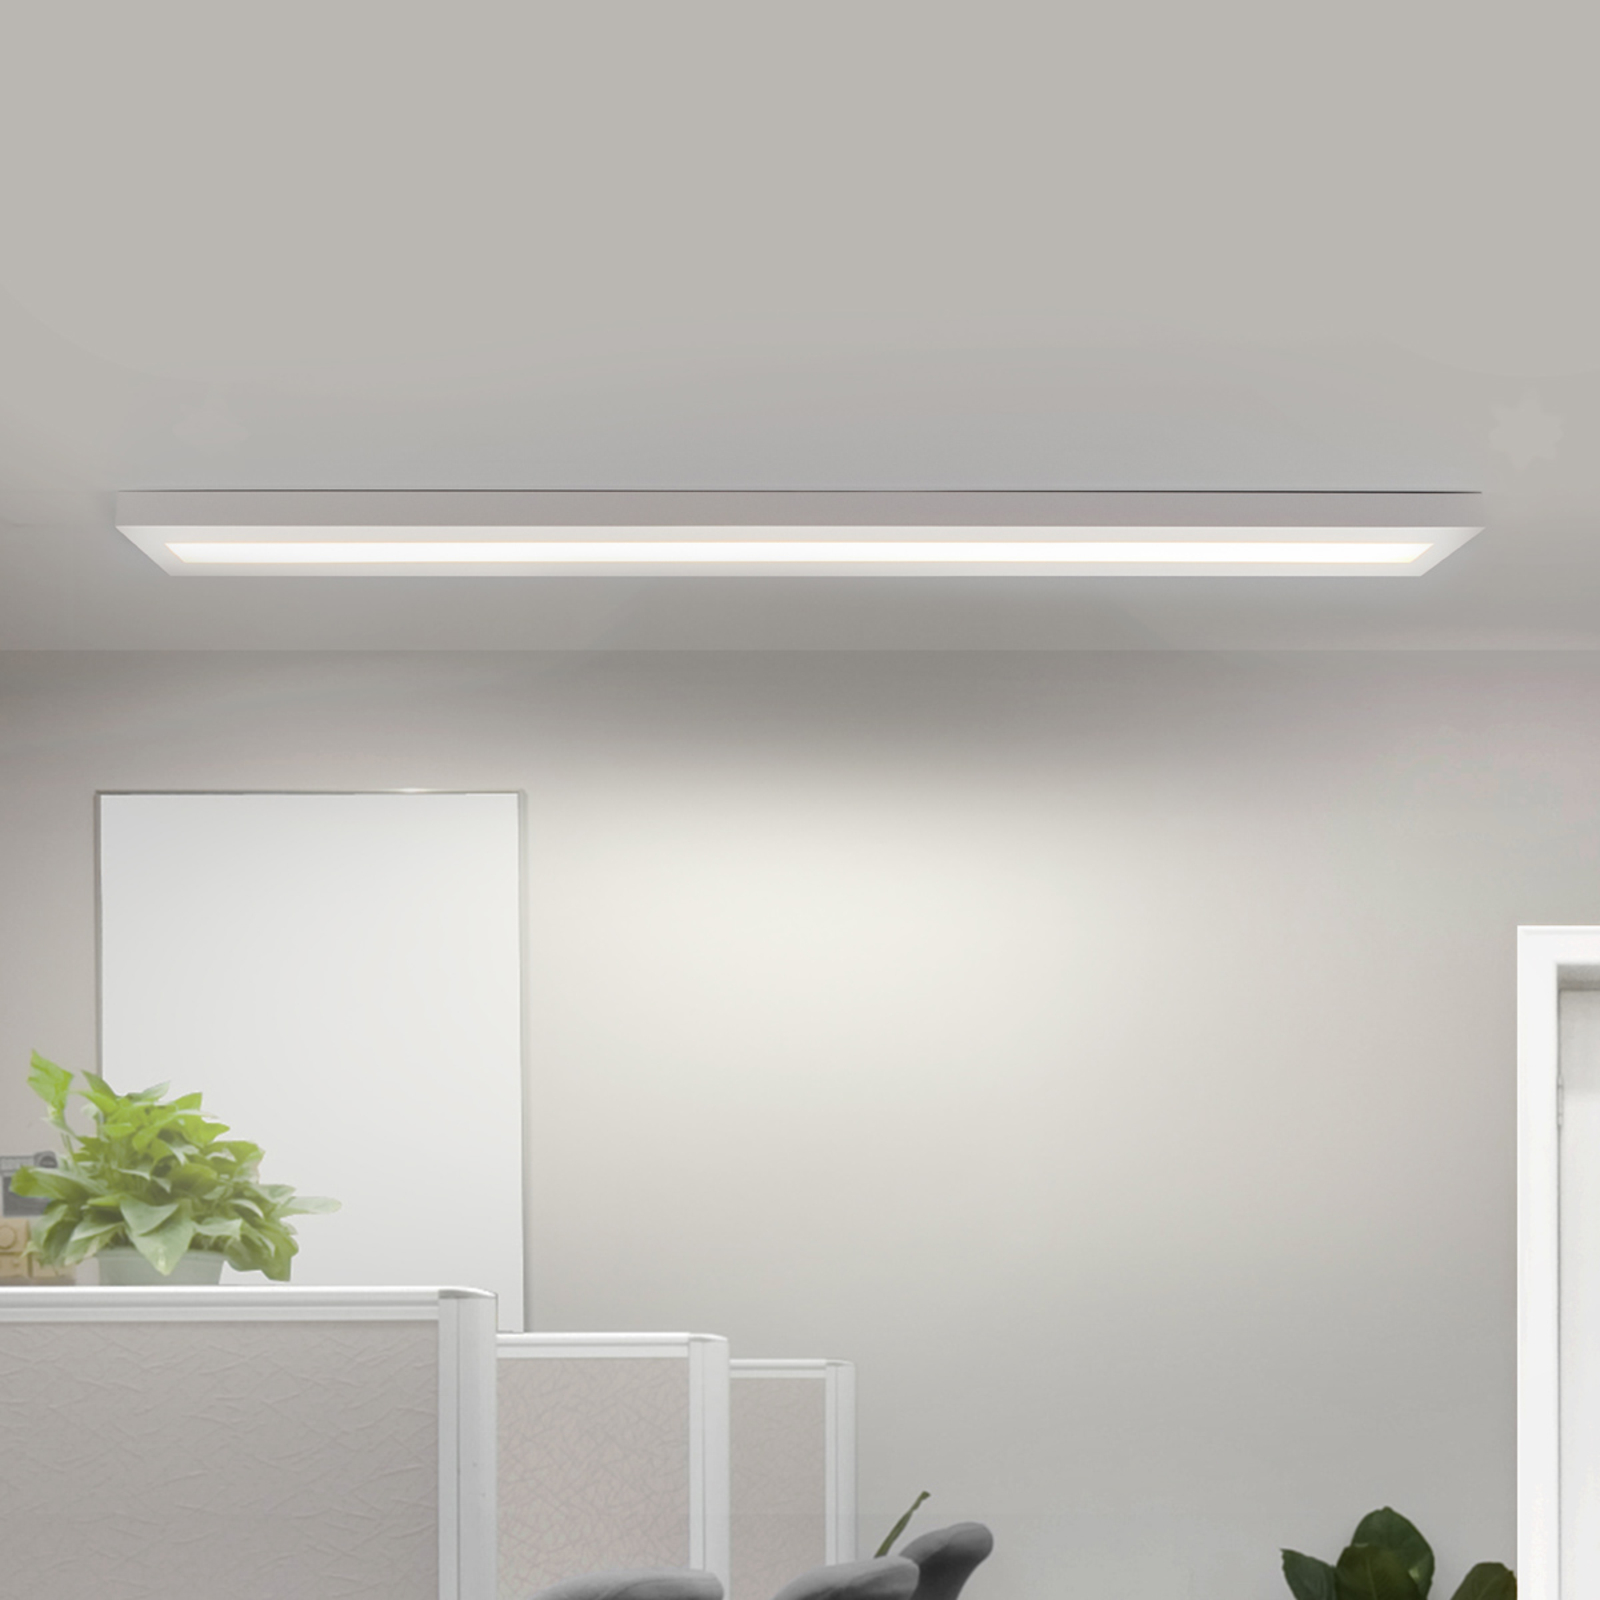 Elongated LED light 36 W white, VDU workstation